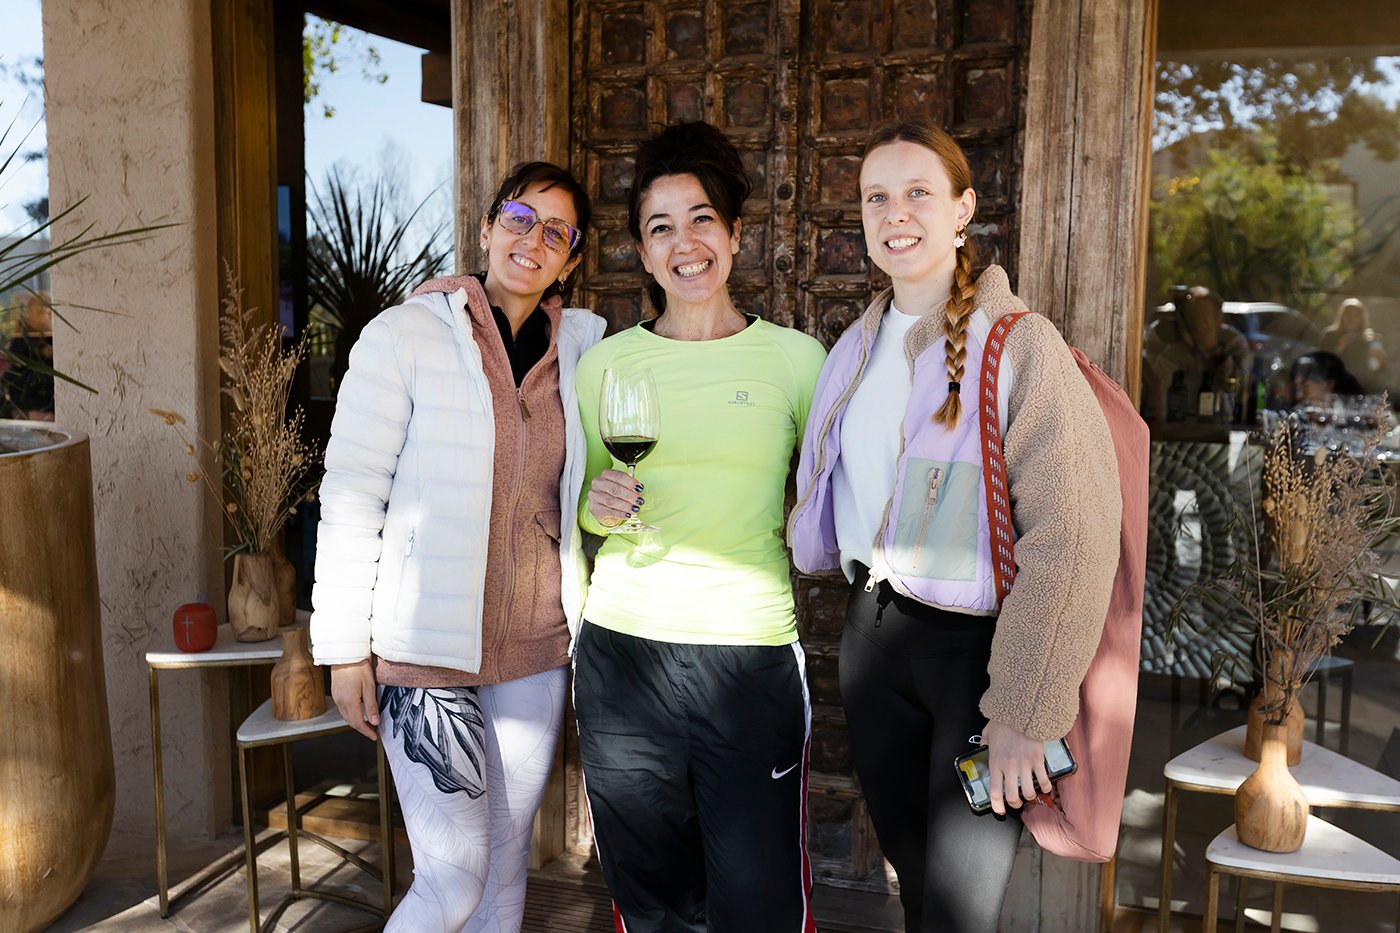 Carolina Tricárico, Adriana Davallópulos y Julieta Bugarin